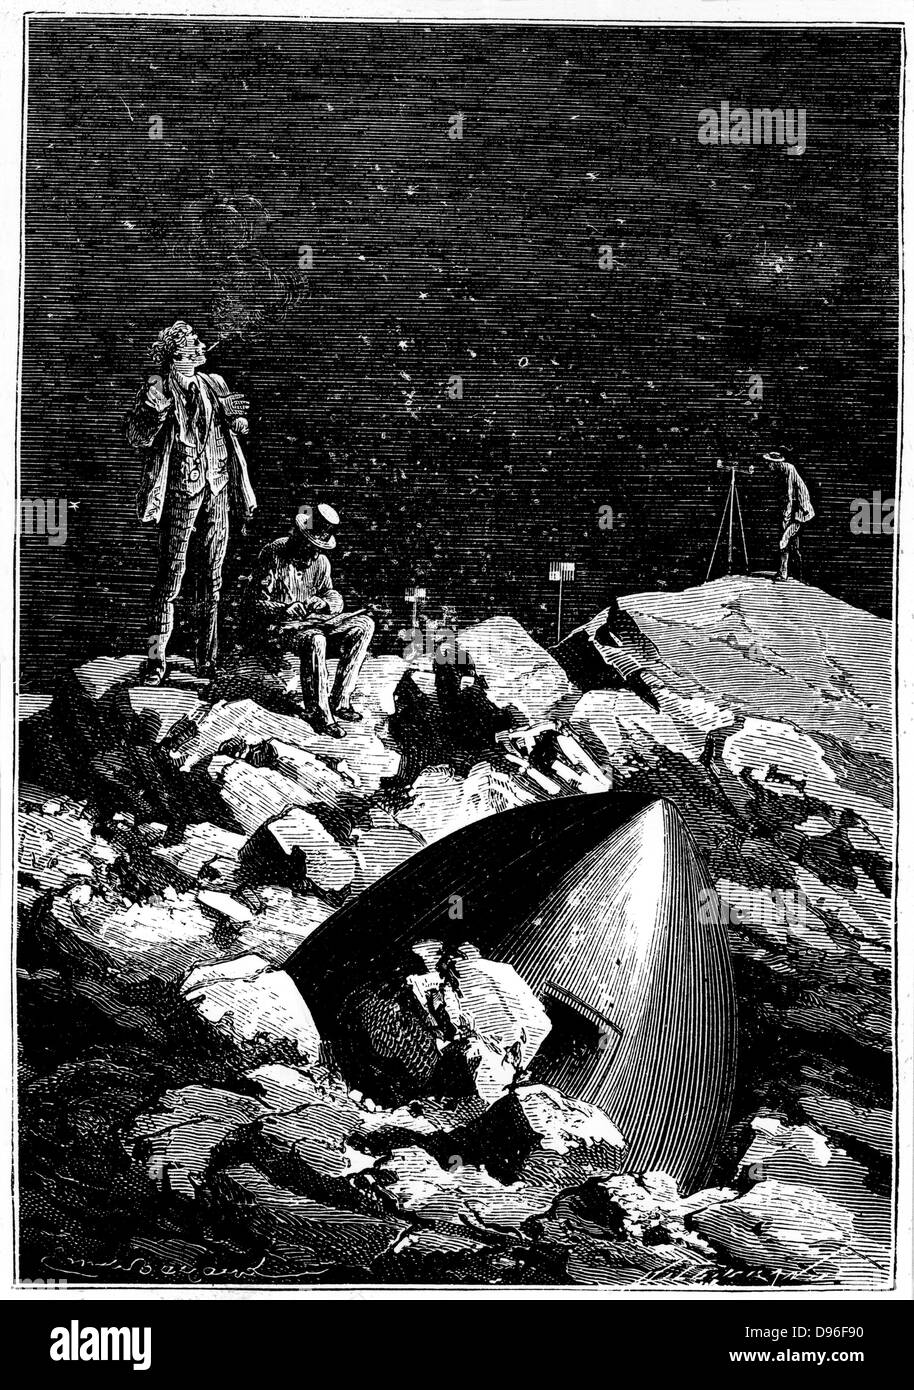 Die Astronauten, die Vermessung des Mondes. Von Jules Verne "Autour De La Lune", Paris, 1865. Holzstich. Stockfoto